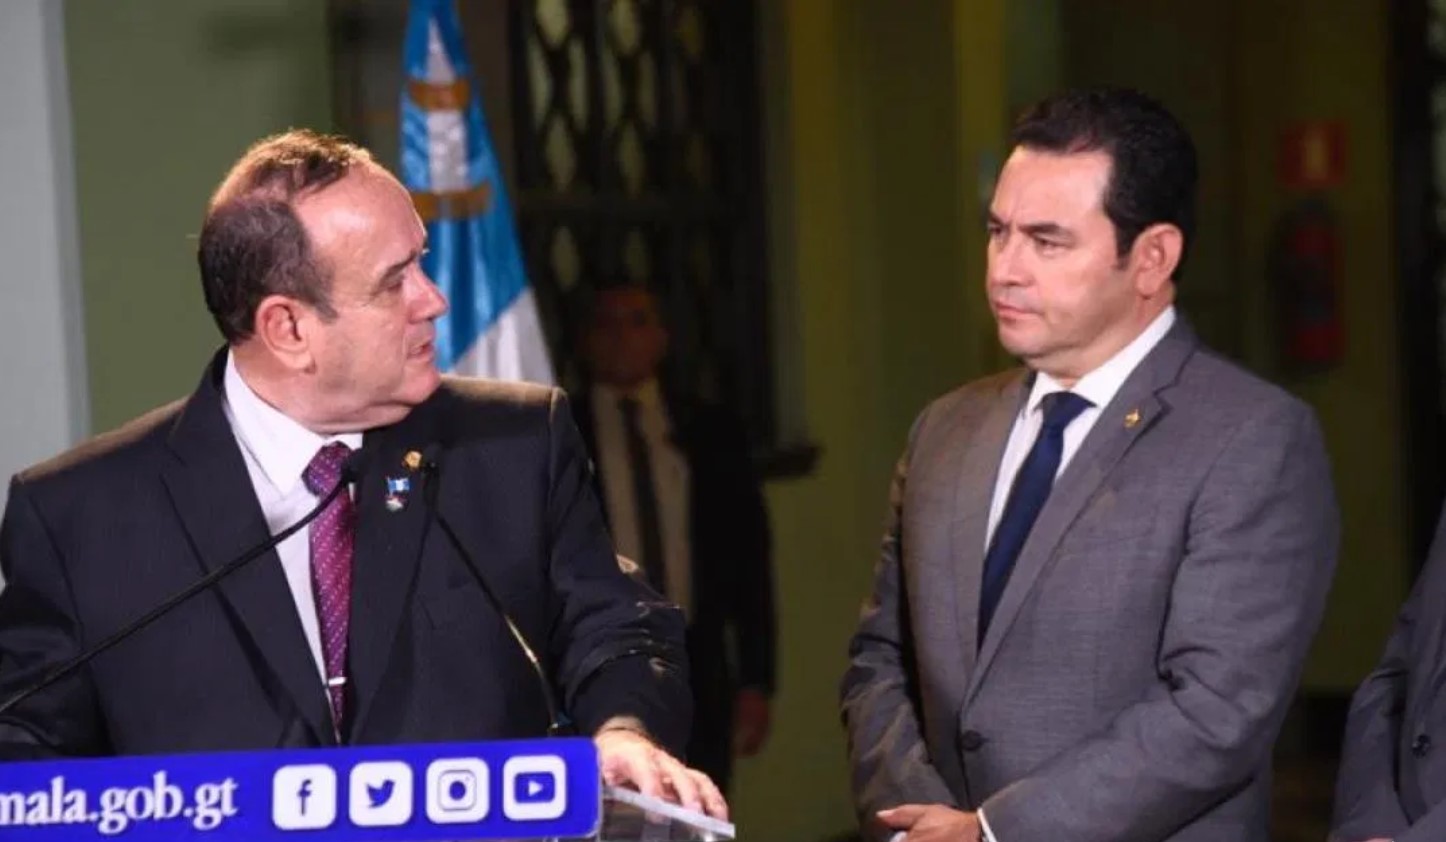 Morales finaliza mandato en Guatemala y Human Rights Watch examina el país